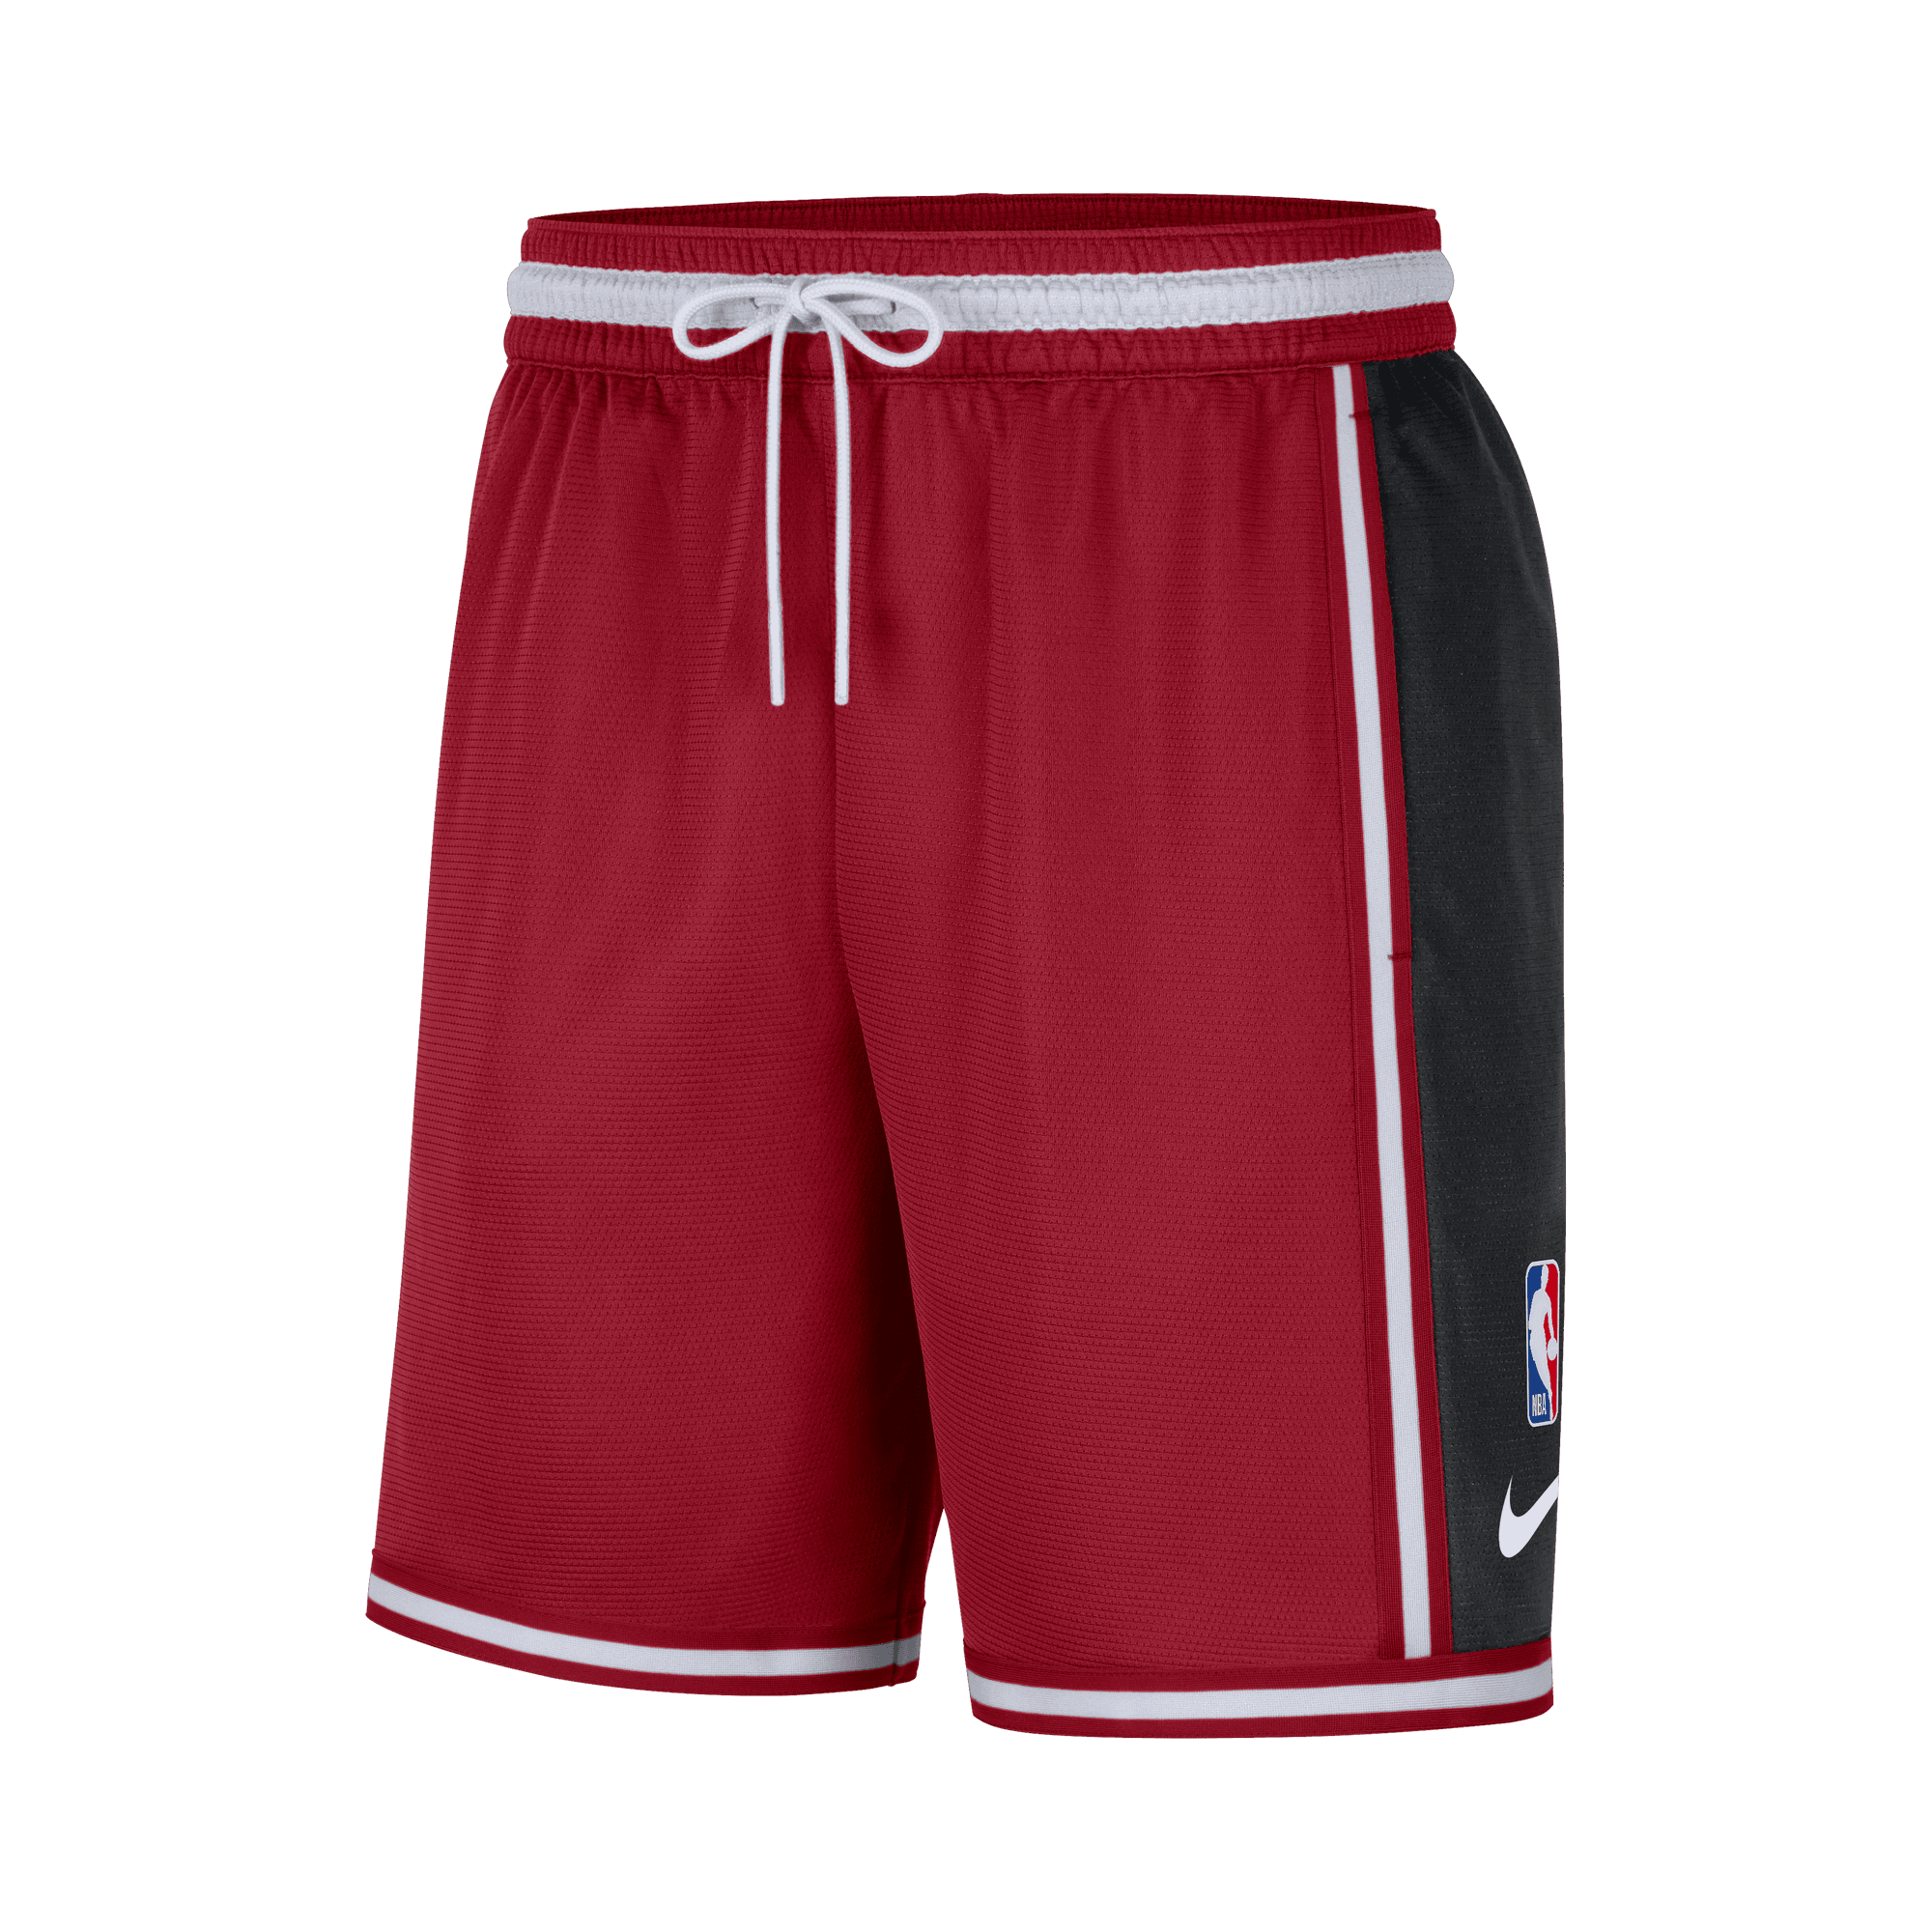 2000 basketball shorts